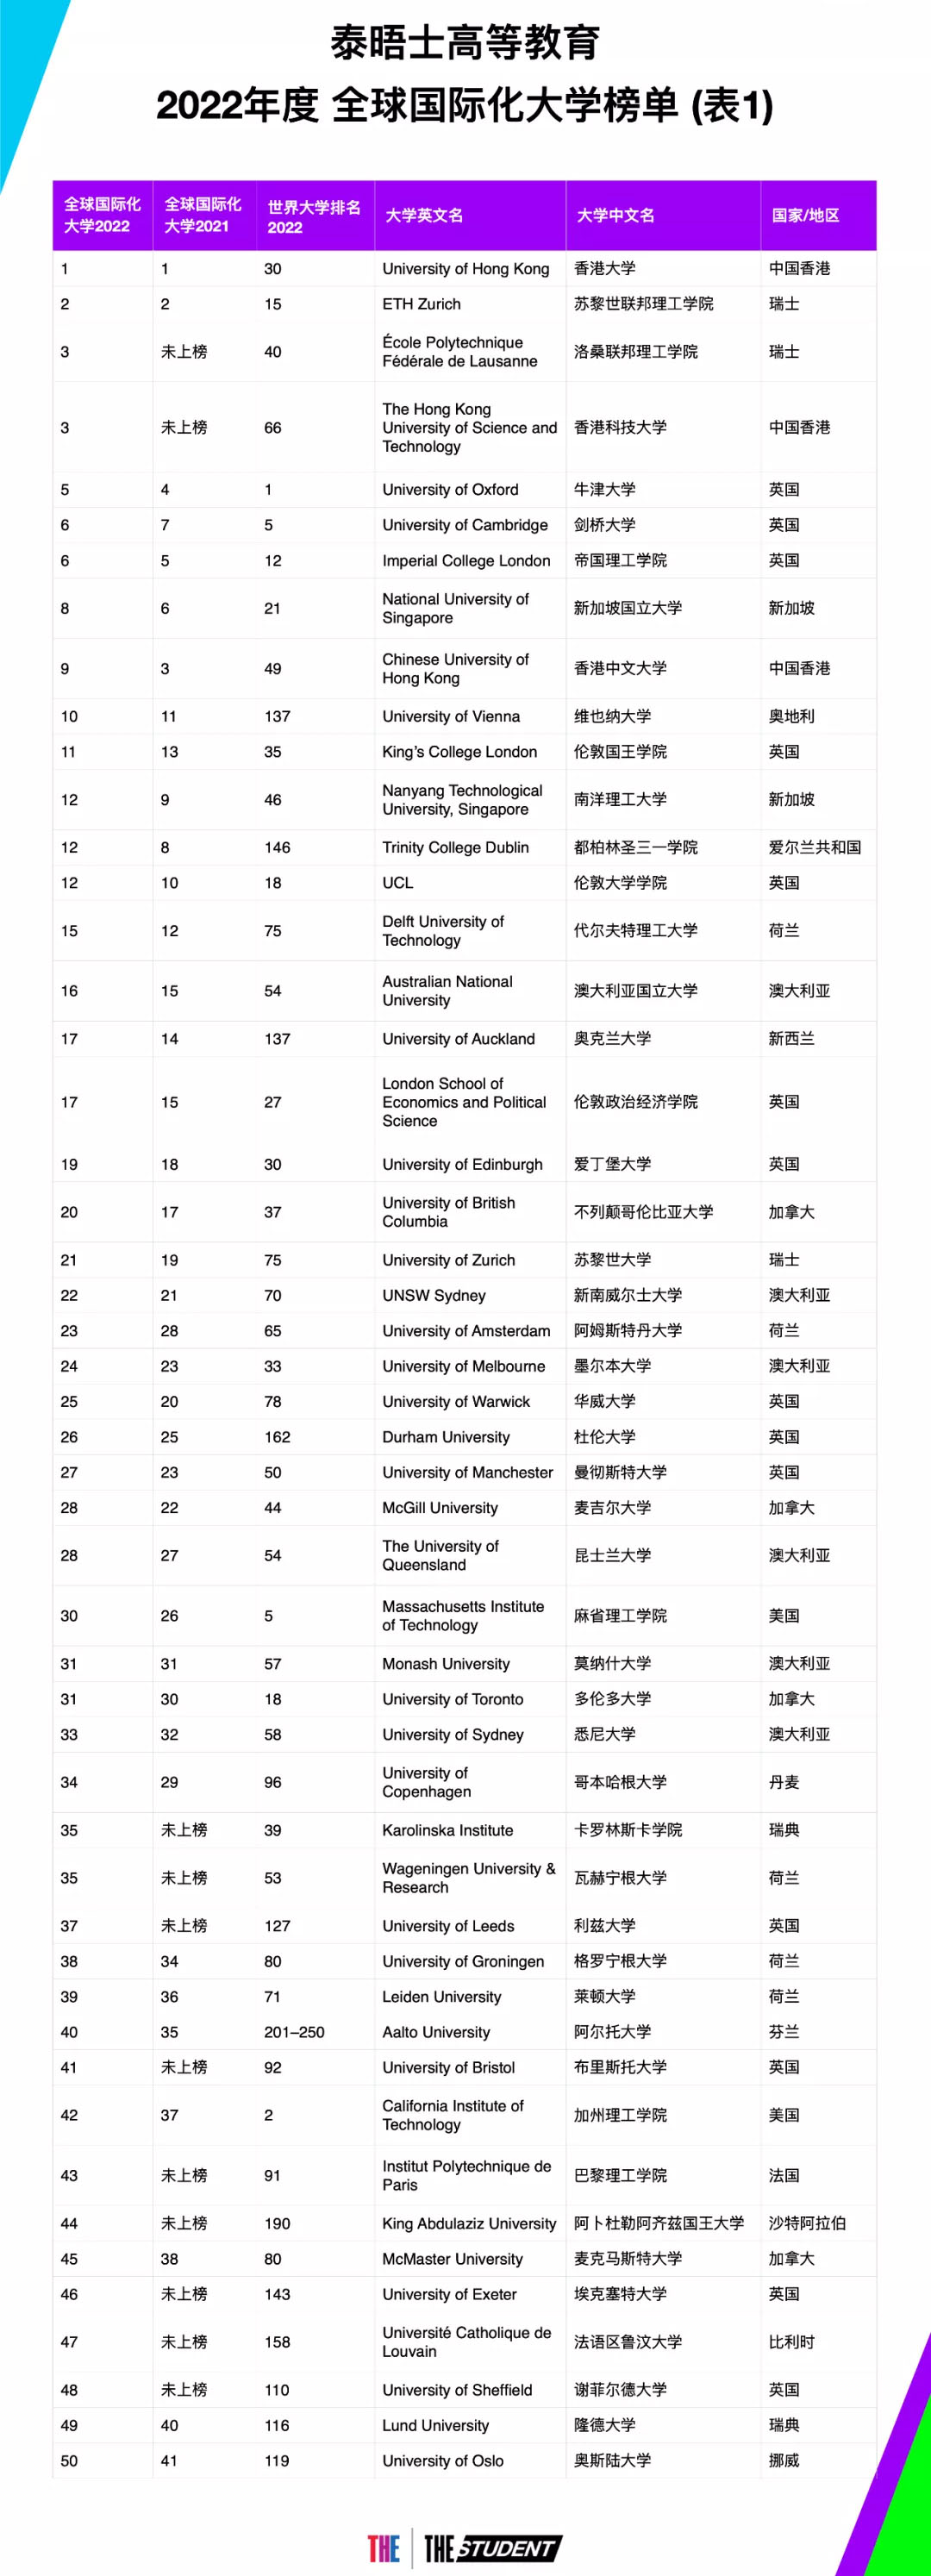 THE2022年度全球国际化大学排行榜发布！